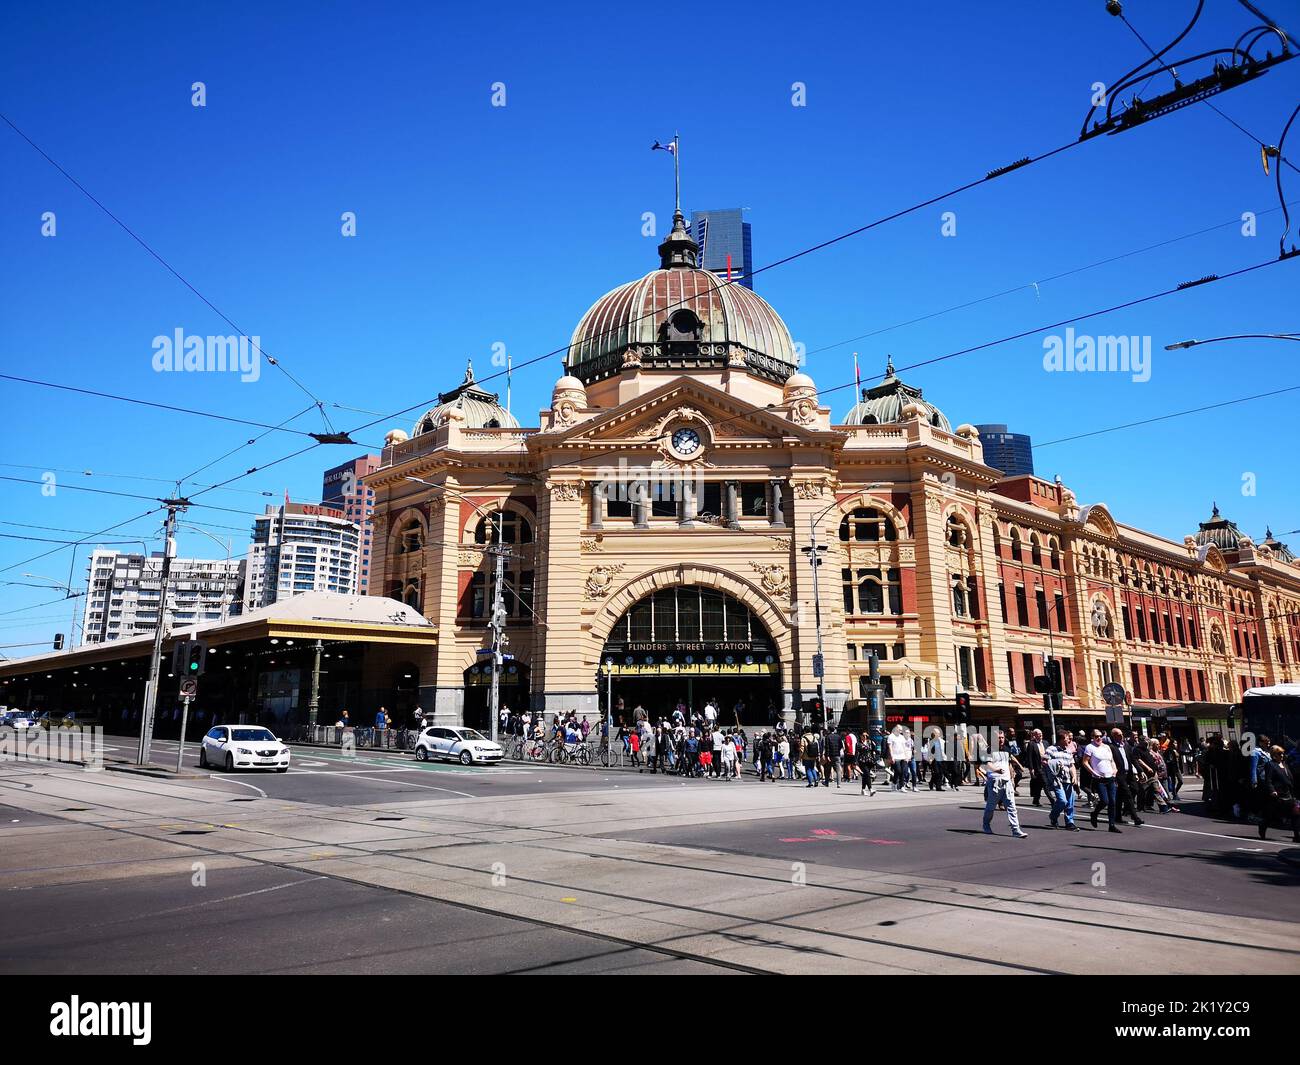 La gare de Flinders Street à Melbourne avec une foule de personnes dans la rue contre un ciel bleu Banque D'Images